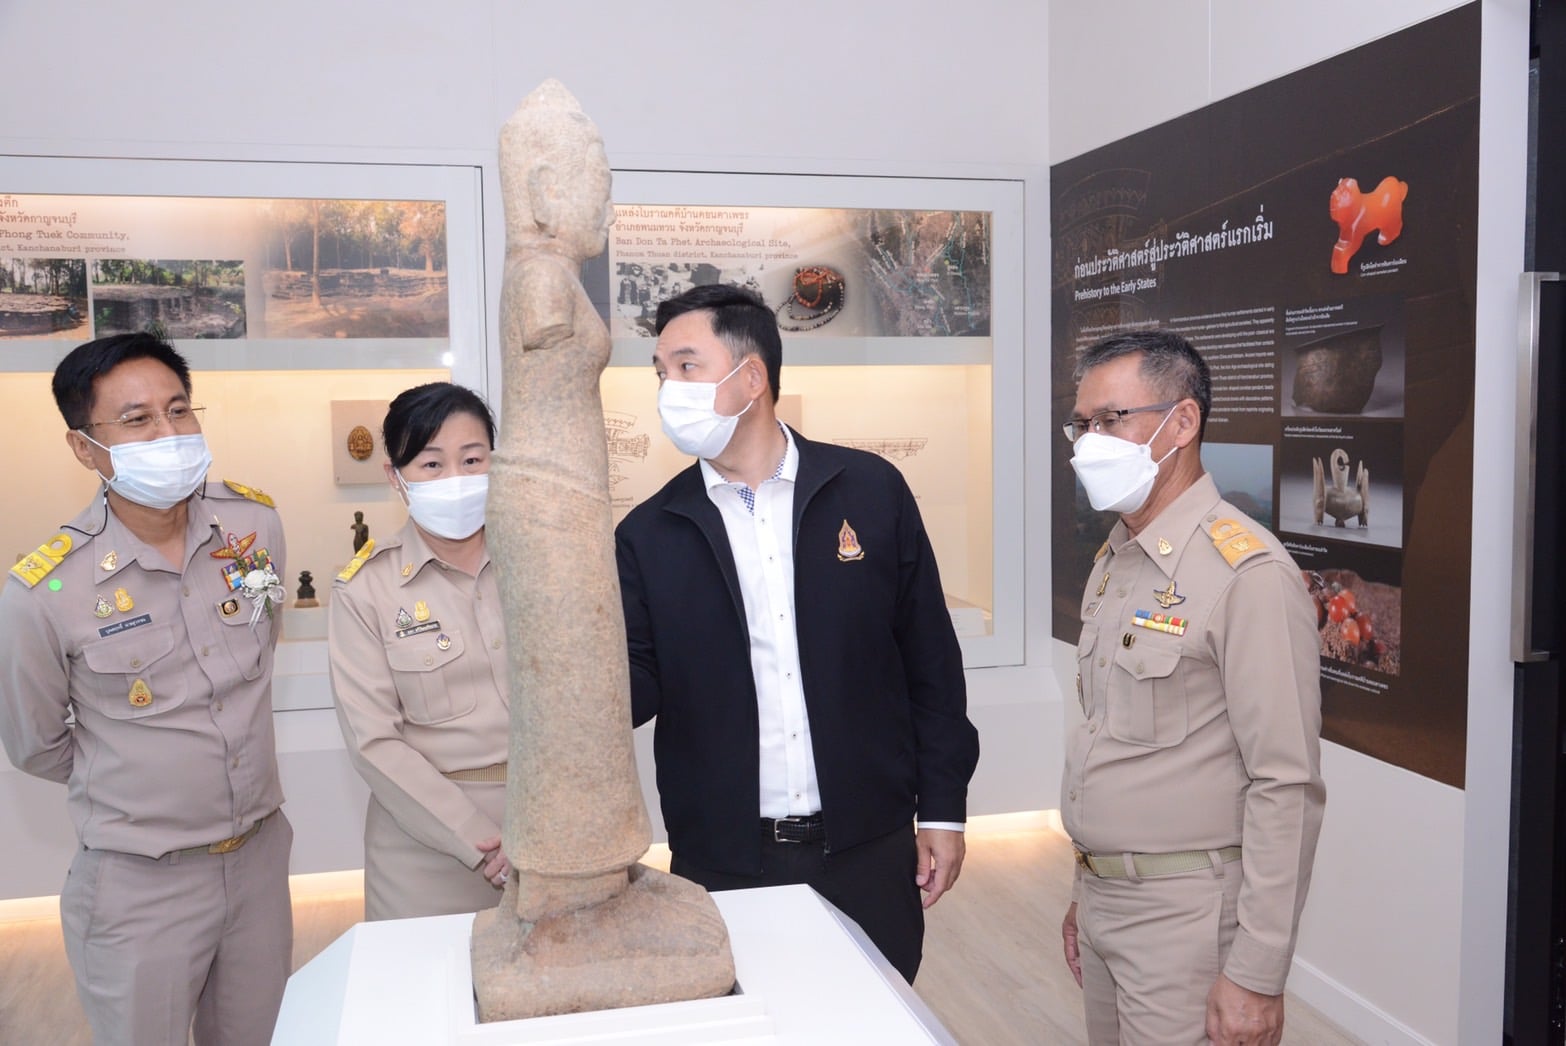 พิธีเปิดนิทรรศการถาวรพิพิธภัณฑสถานแห่งชาติ บ้านเก่า จังหวัดกาญจนบุรี